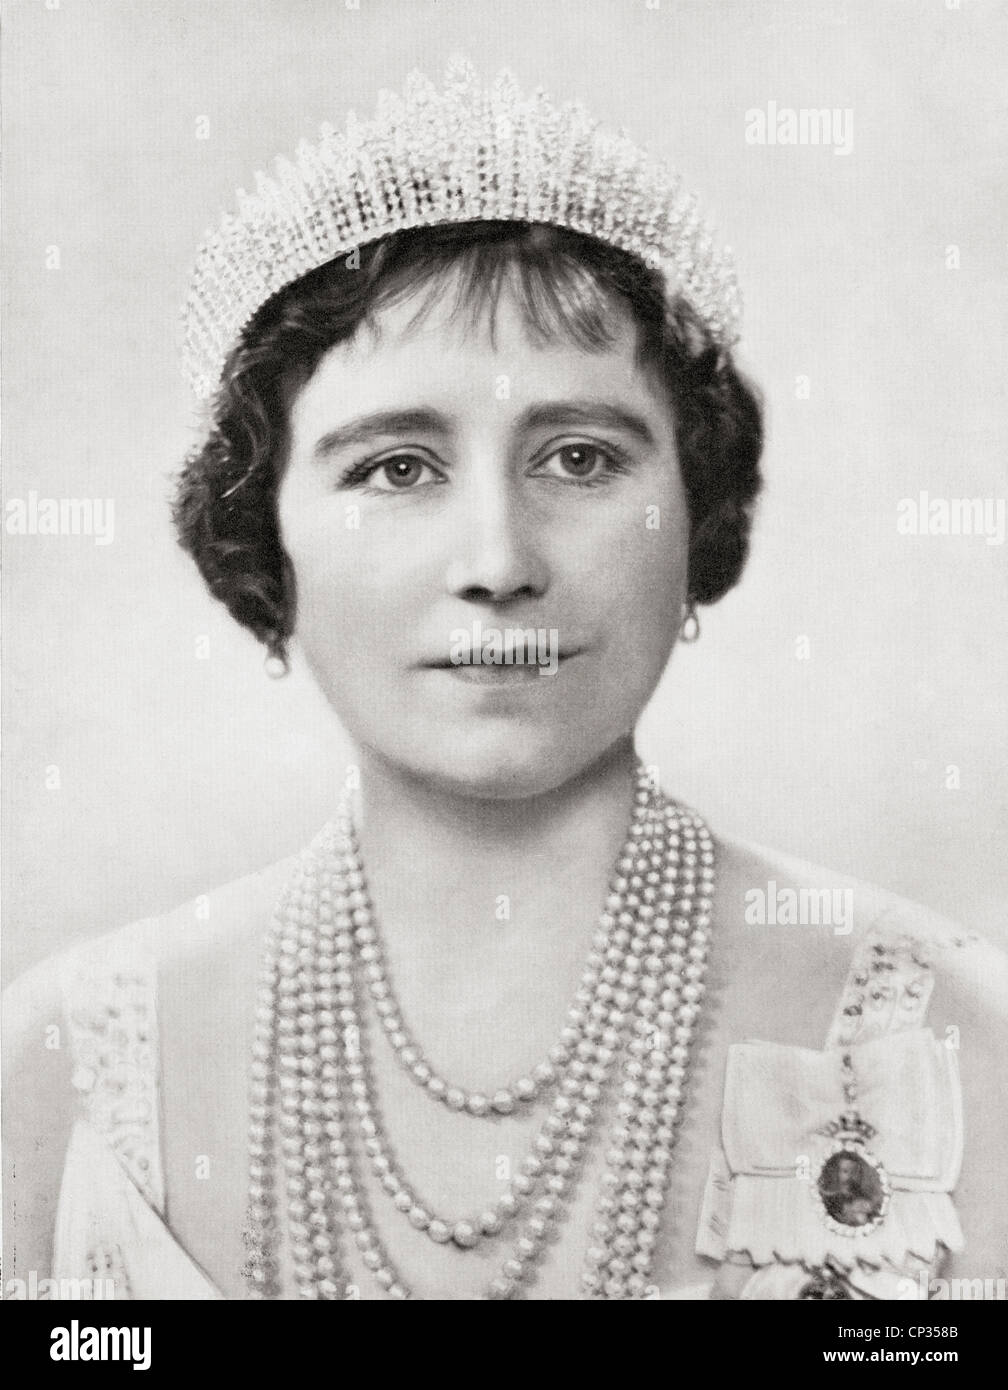 Königin Elizabeth, die Königinmutter. Elizabeth Angela Marguerite Bowes-Lyon, 1900 – 2002. Königin-Gemahl von König George VI. Stockfoto